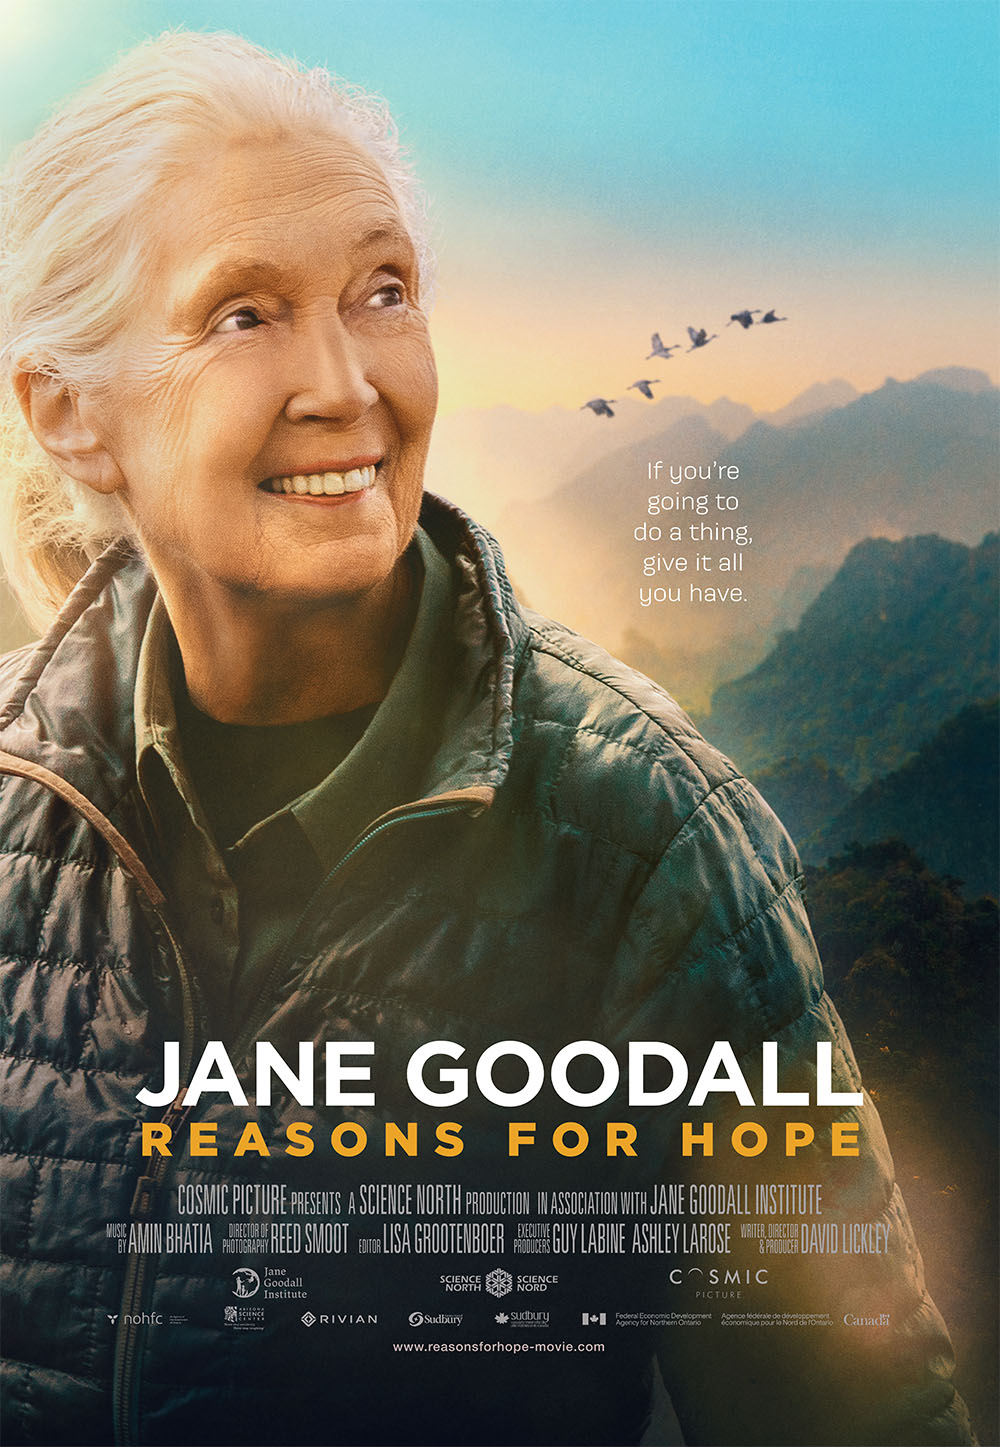 Jane Goodall’s Reasons For Hope